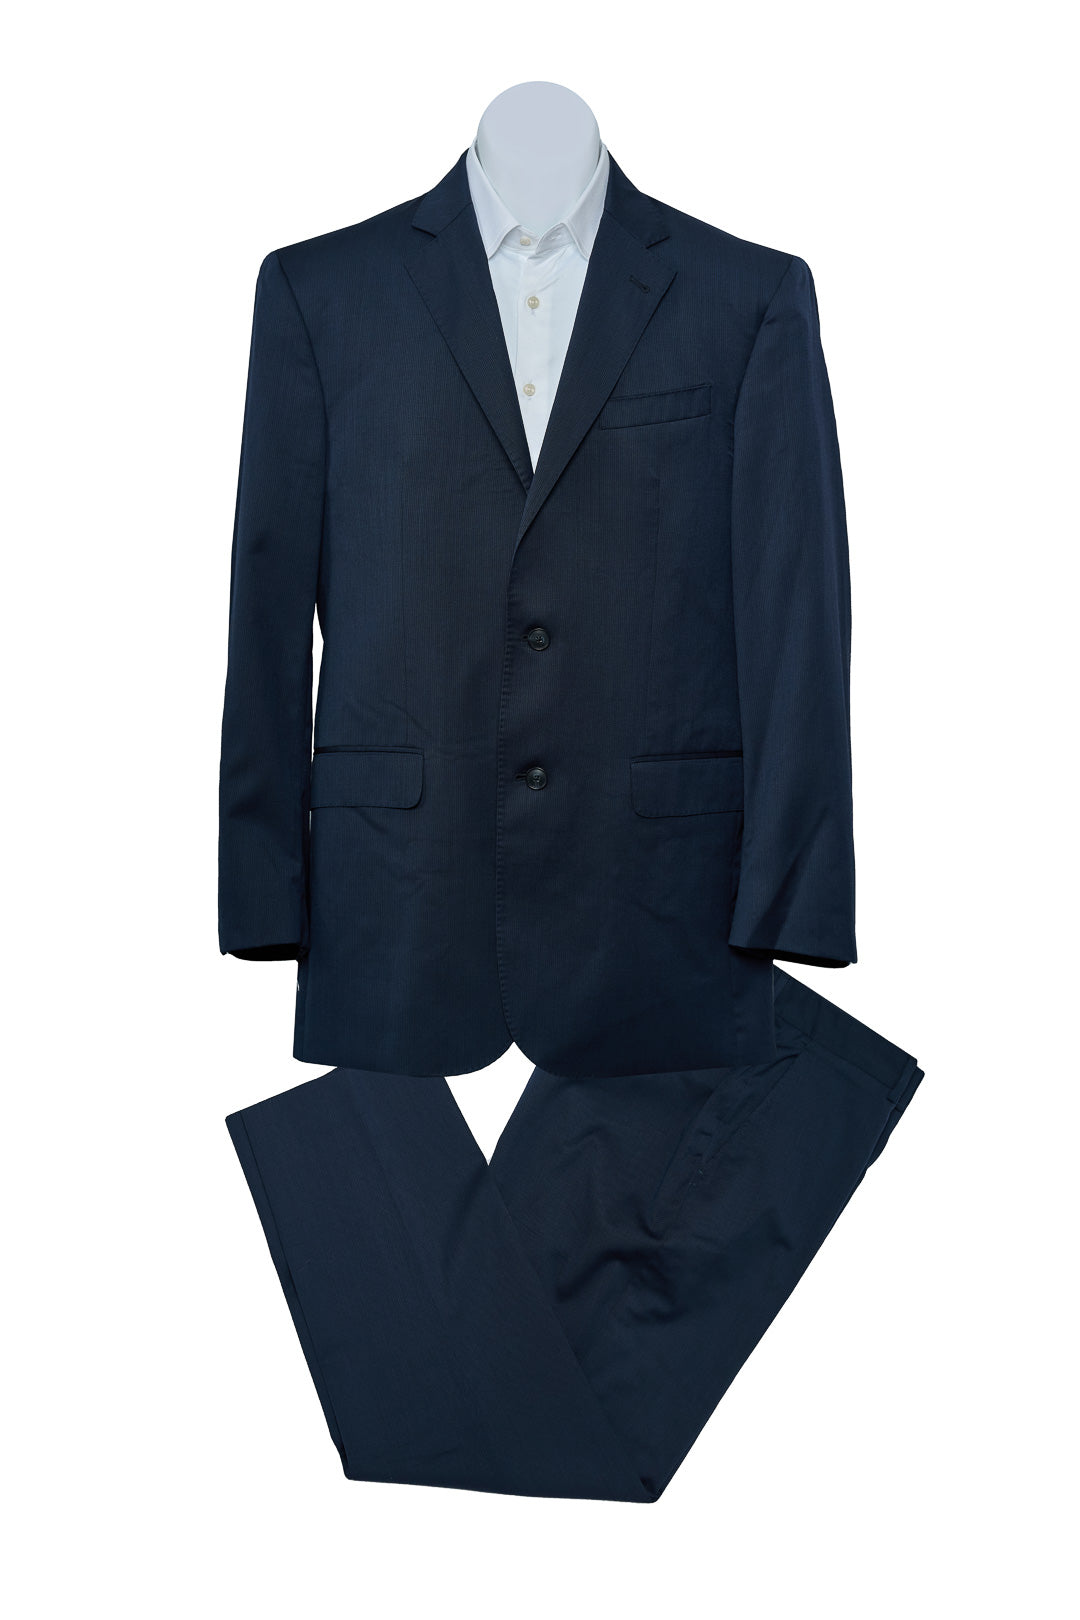 Plain Blue Electric Suit